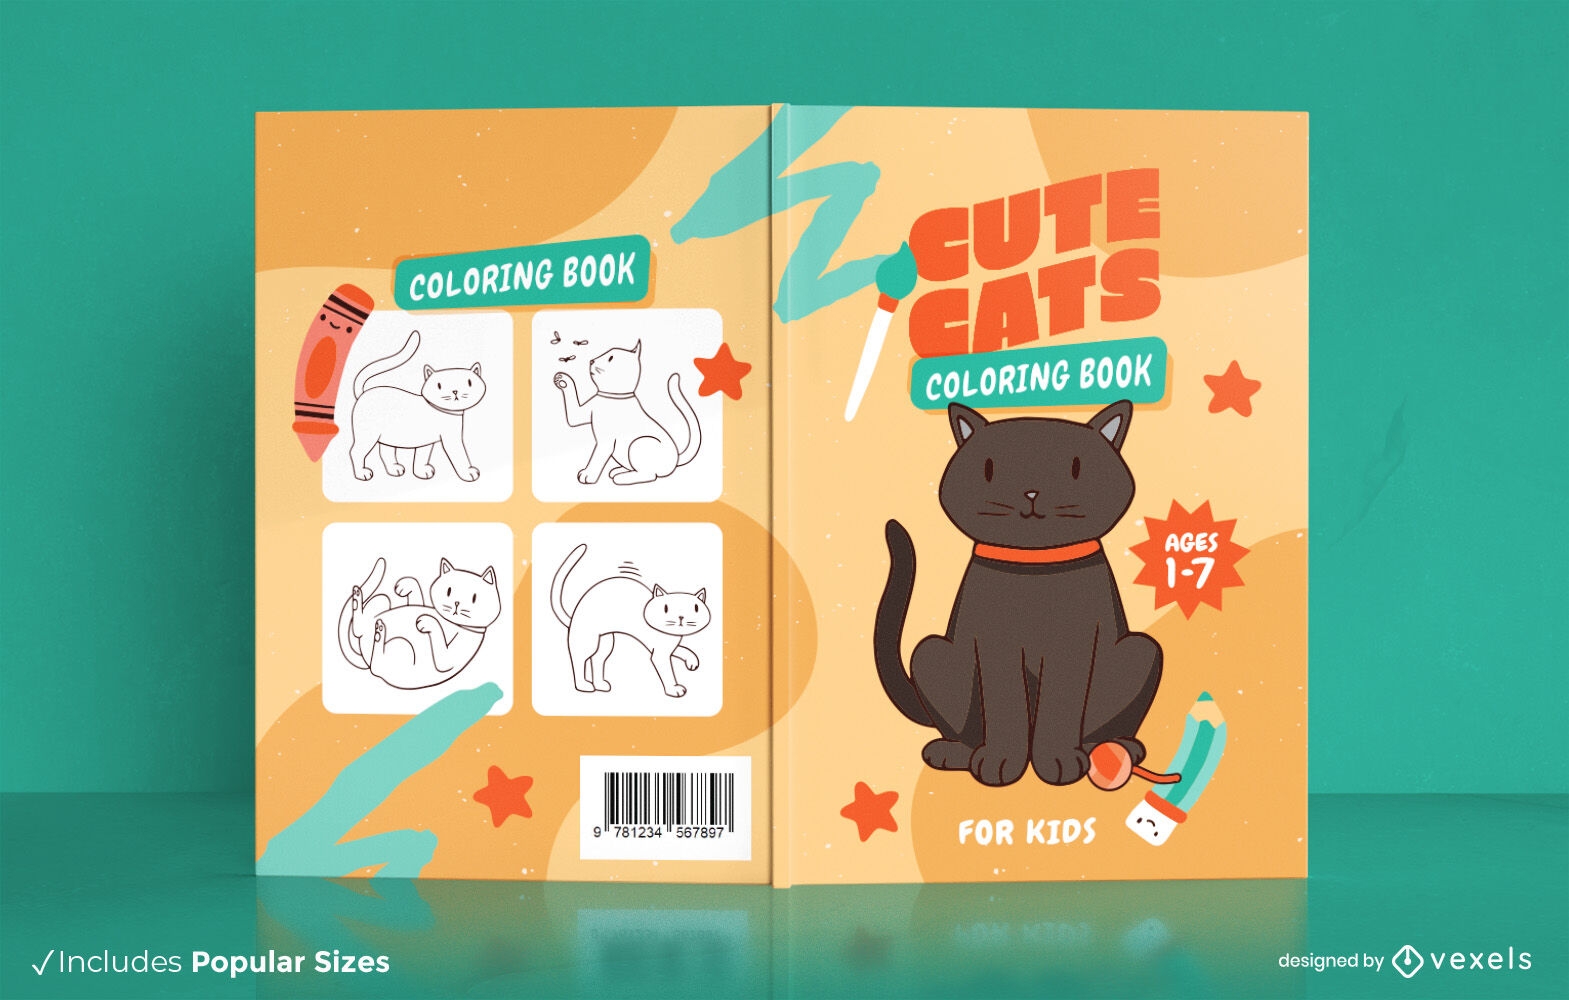 Black cat animal book cover design